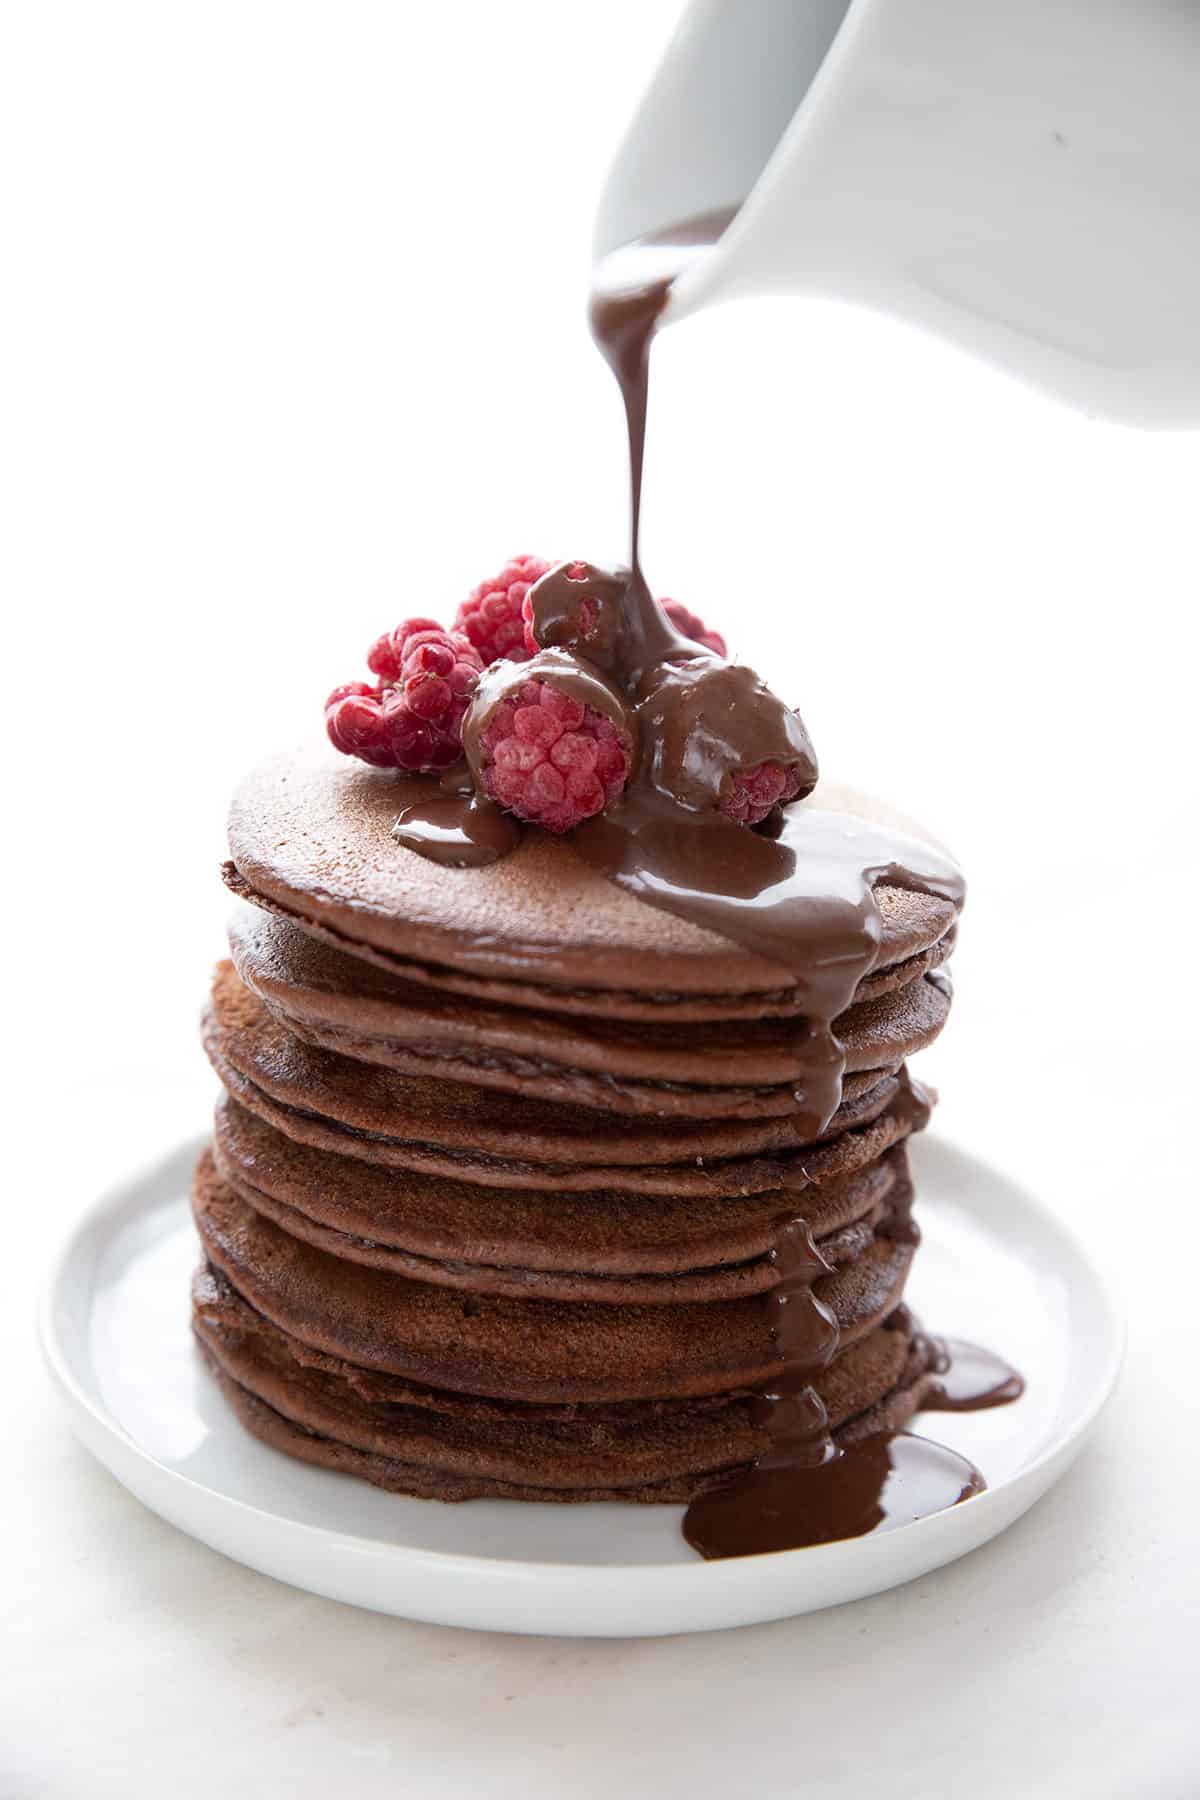 Chocolate Protein Pancakes - Keto Recipe